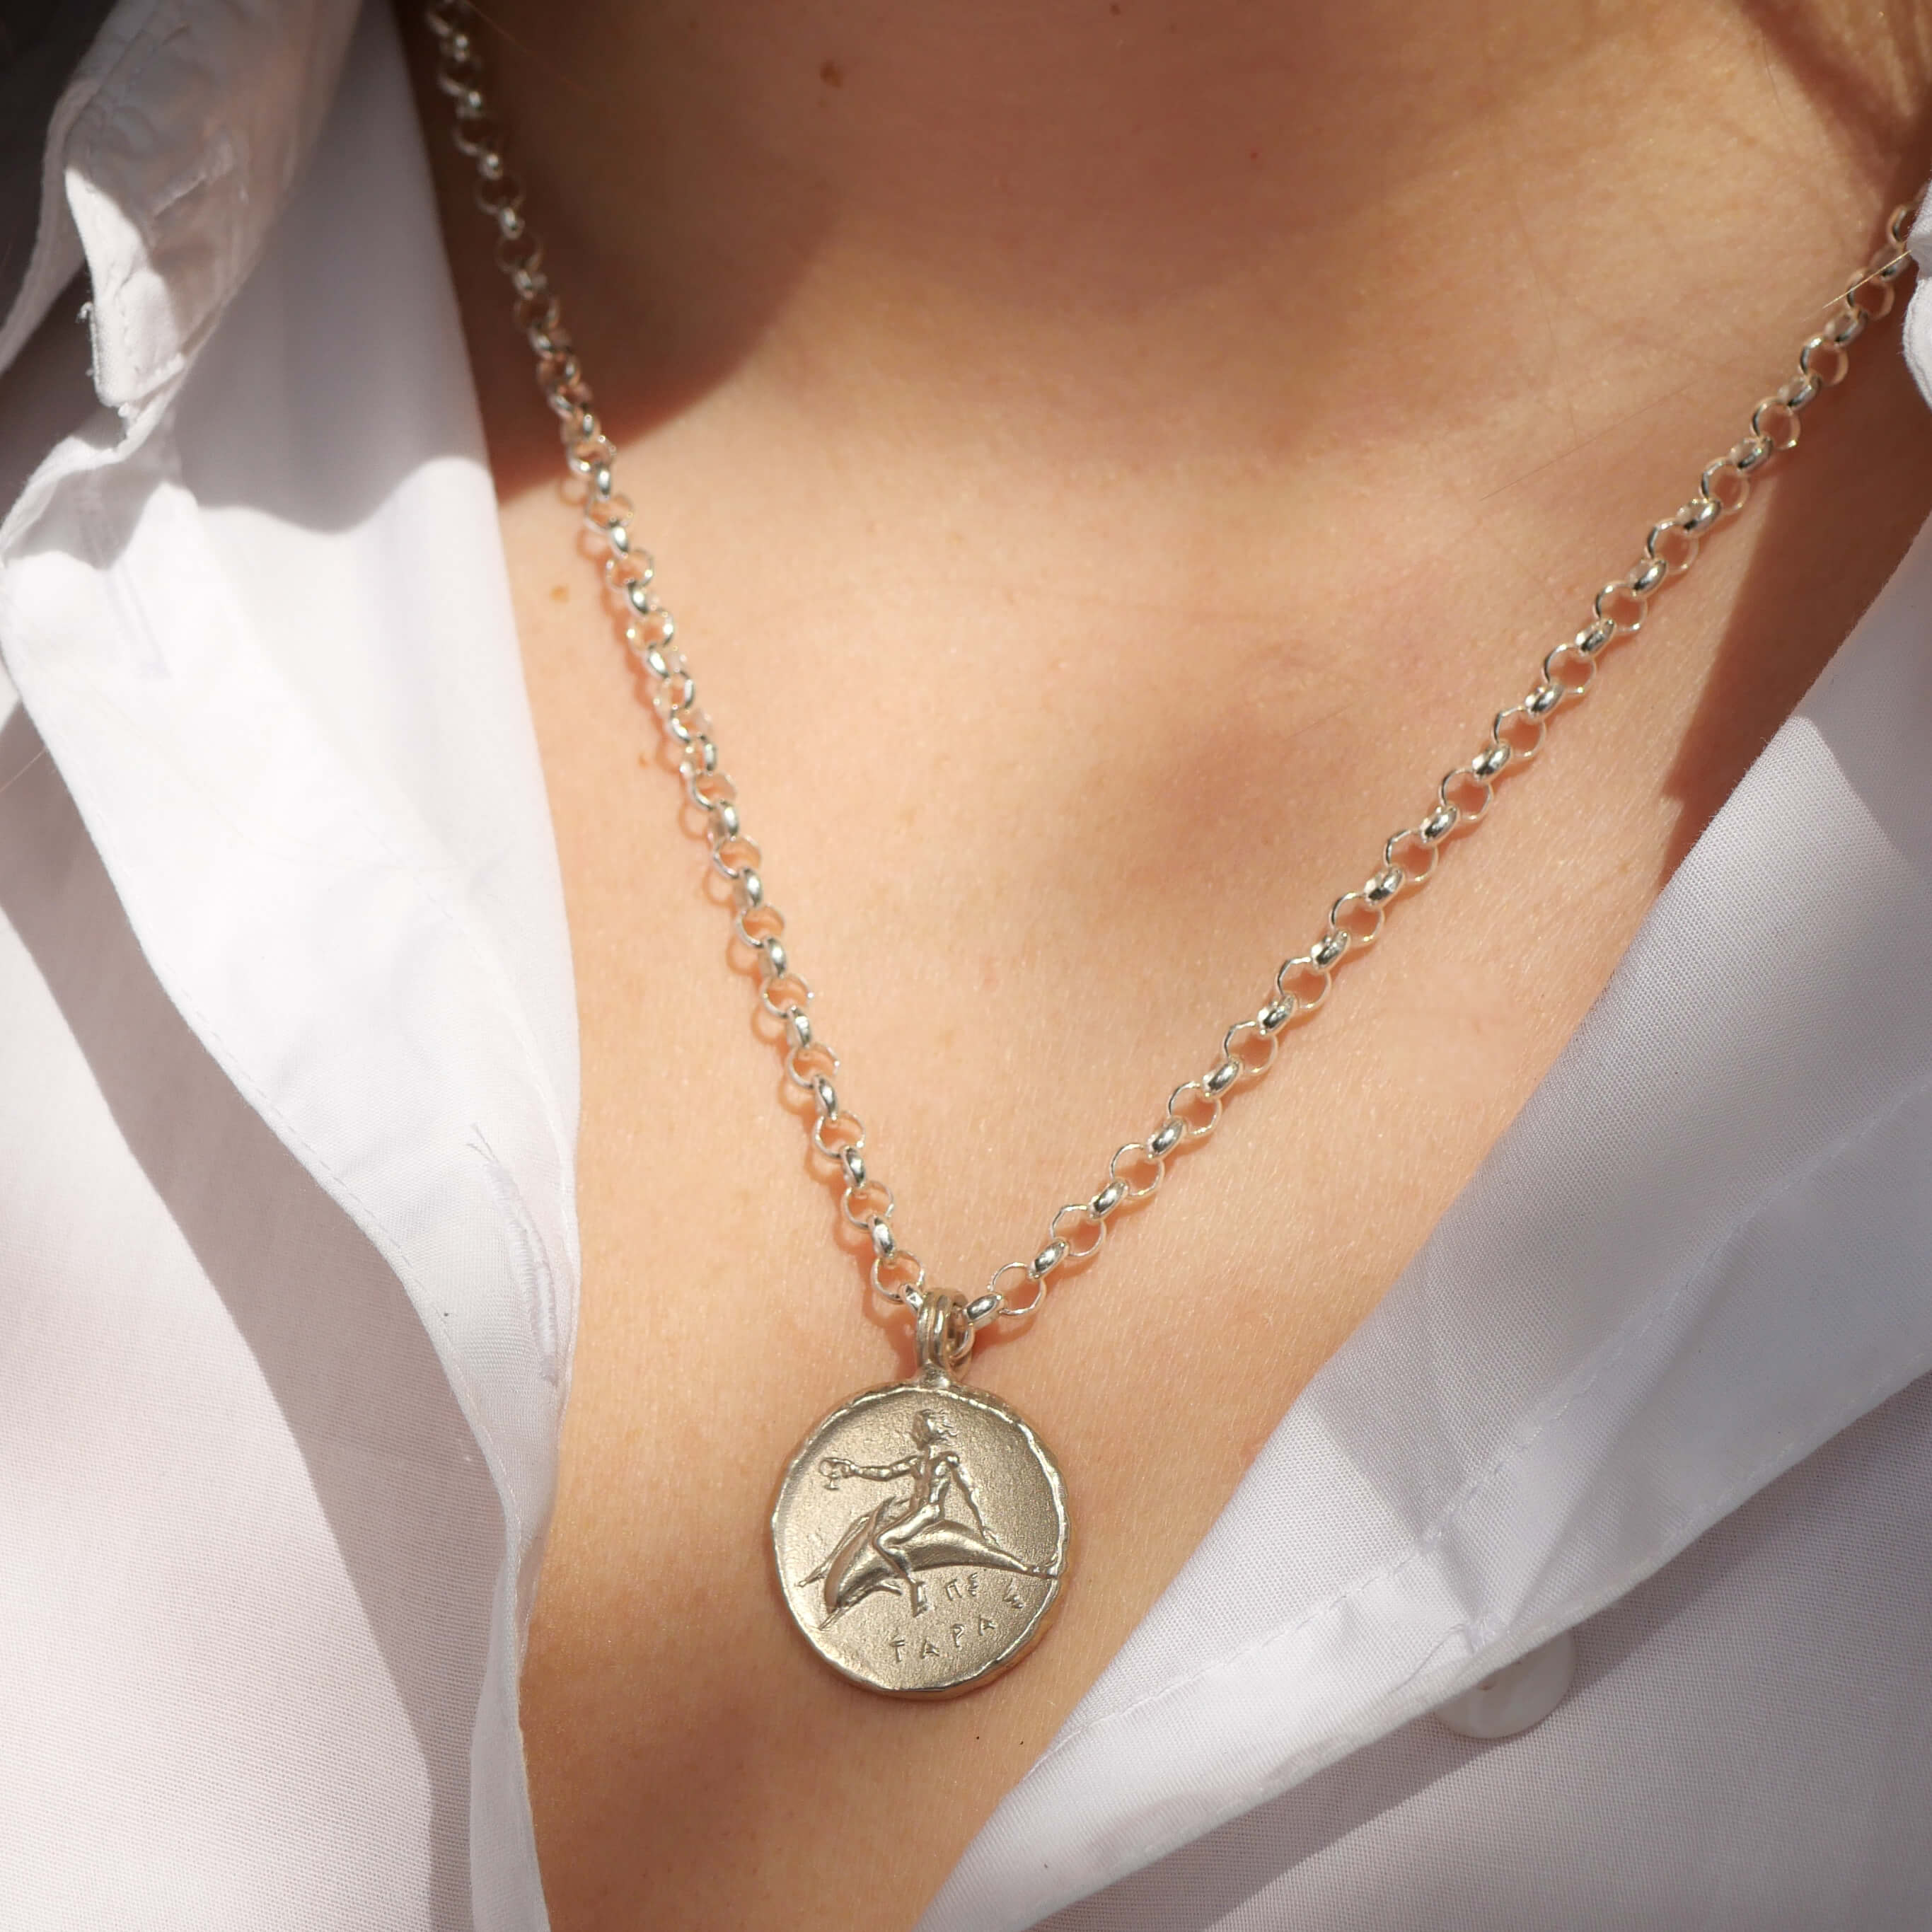 Halskette Delfin mit antiker Münze aus sterling Silber, mit Sohn des Zeus der auf einem Delfin reitet, Kettenlänge 50cm - True Nuggets of Love - Silberketten